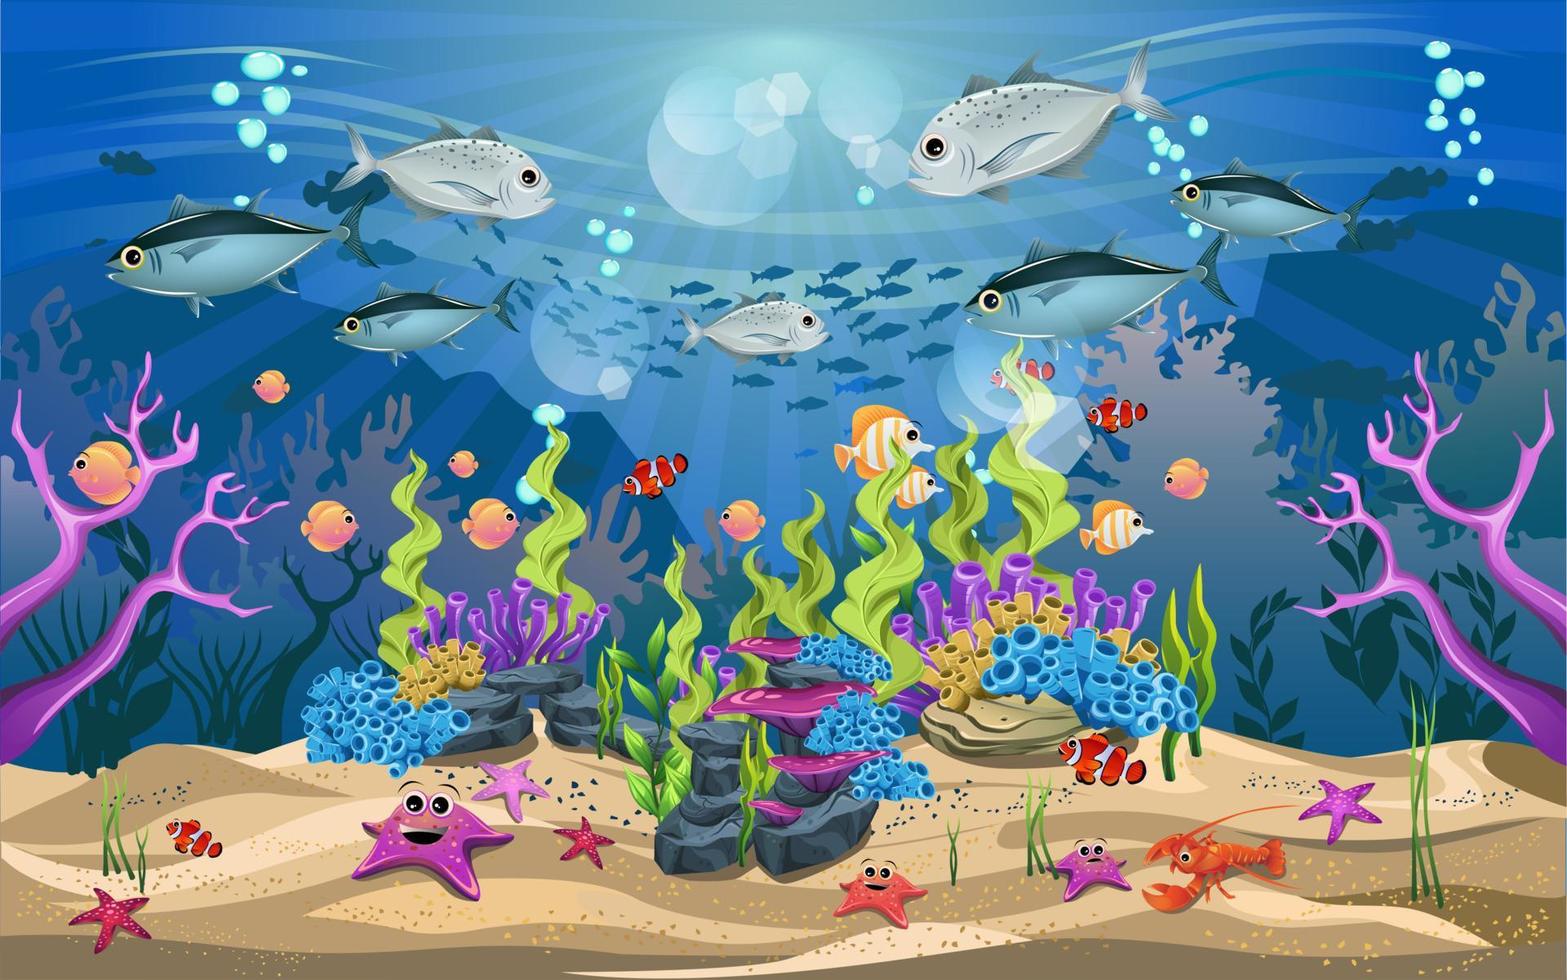 vida e belos ecossistemas no oceano. a beleza da vida subaquática com diferentes animais e habitats. a vida marinha é brilhante e colorida. vetor